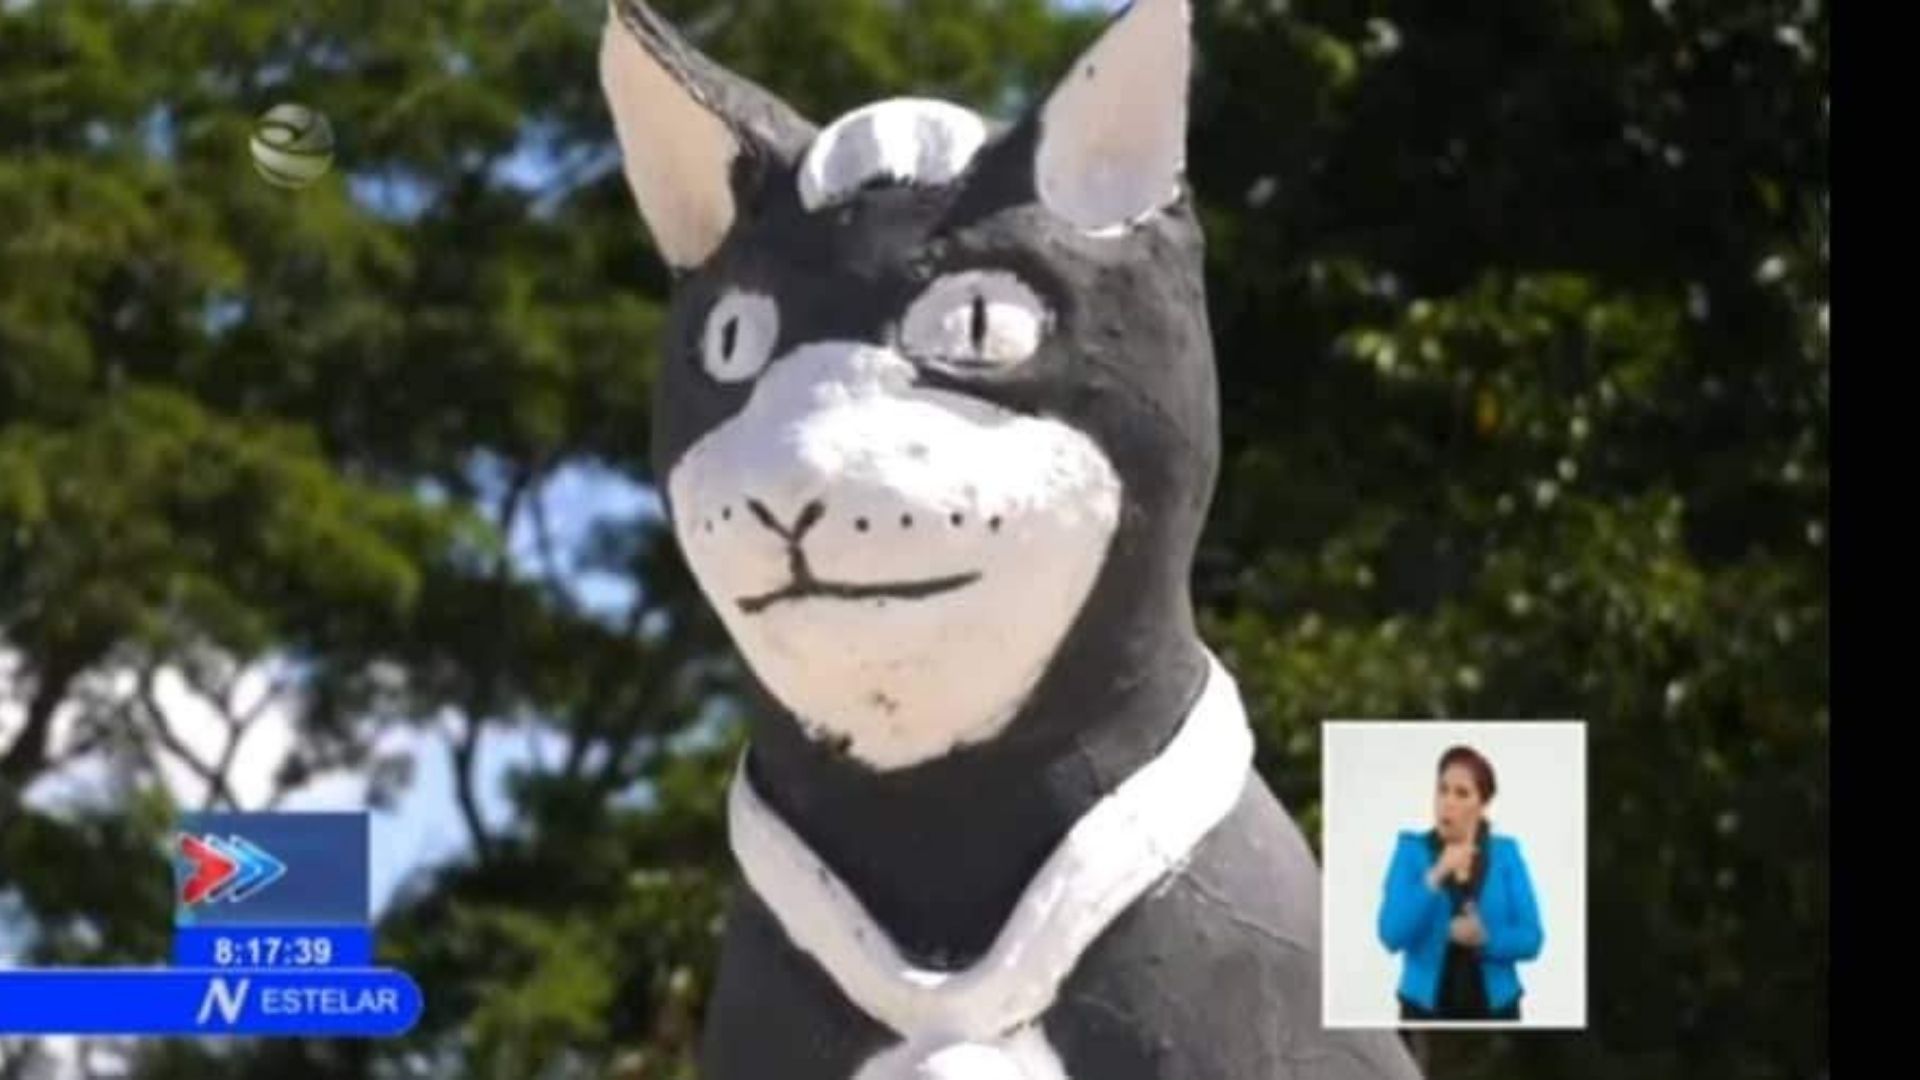 El gato de dimensiones humanas, hecho de cemento y arena, fue mostrado por el Noticiero de la Televisión Cubana.